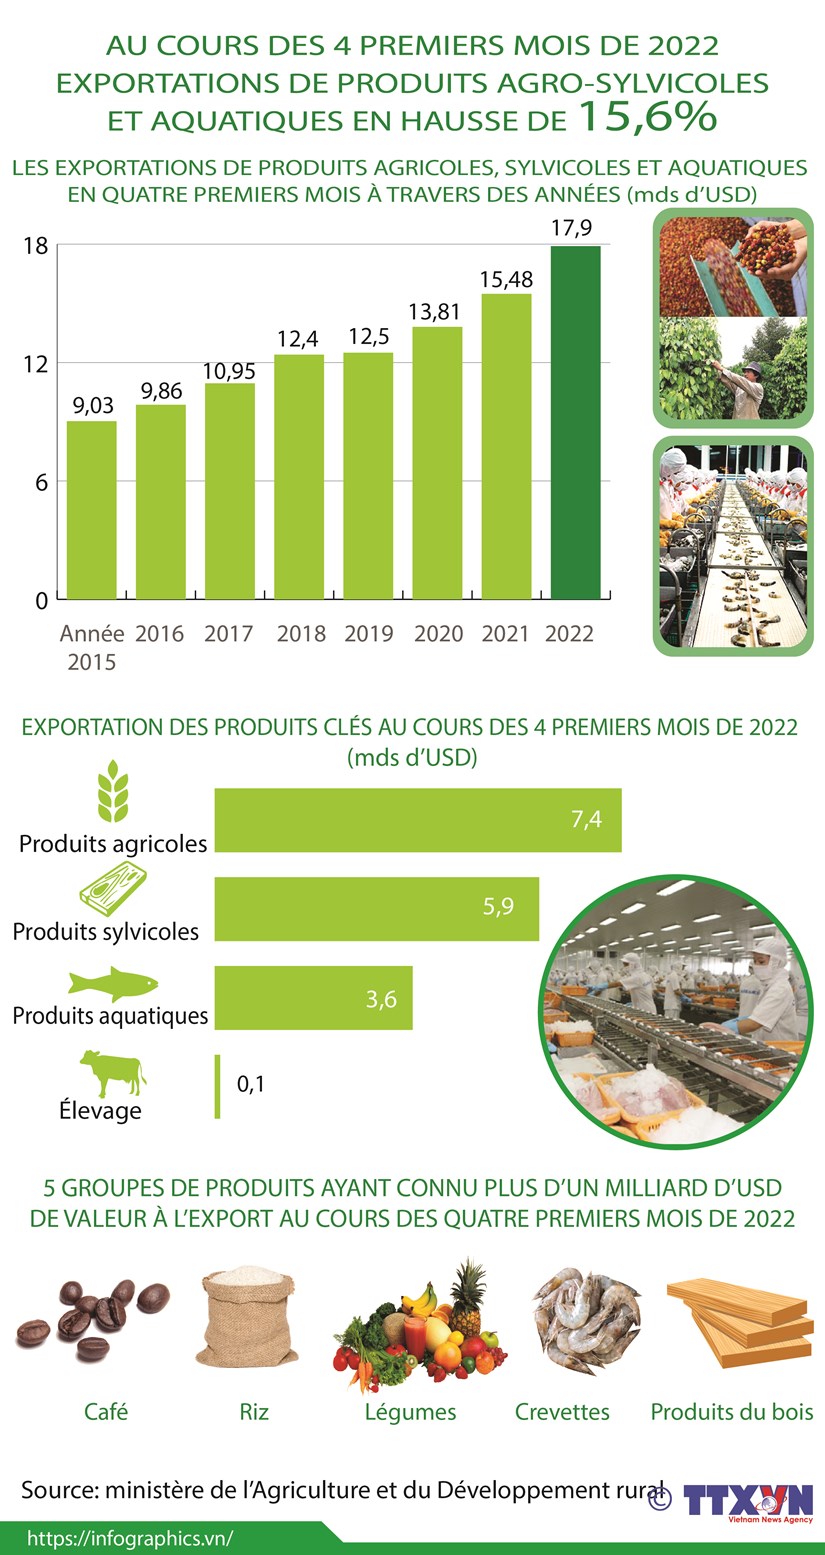 Exportations de produits ago-sylvicoles et aquatiques en hausse de 15,6% en quatre premiers mois hinh anh 1